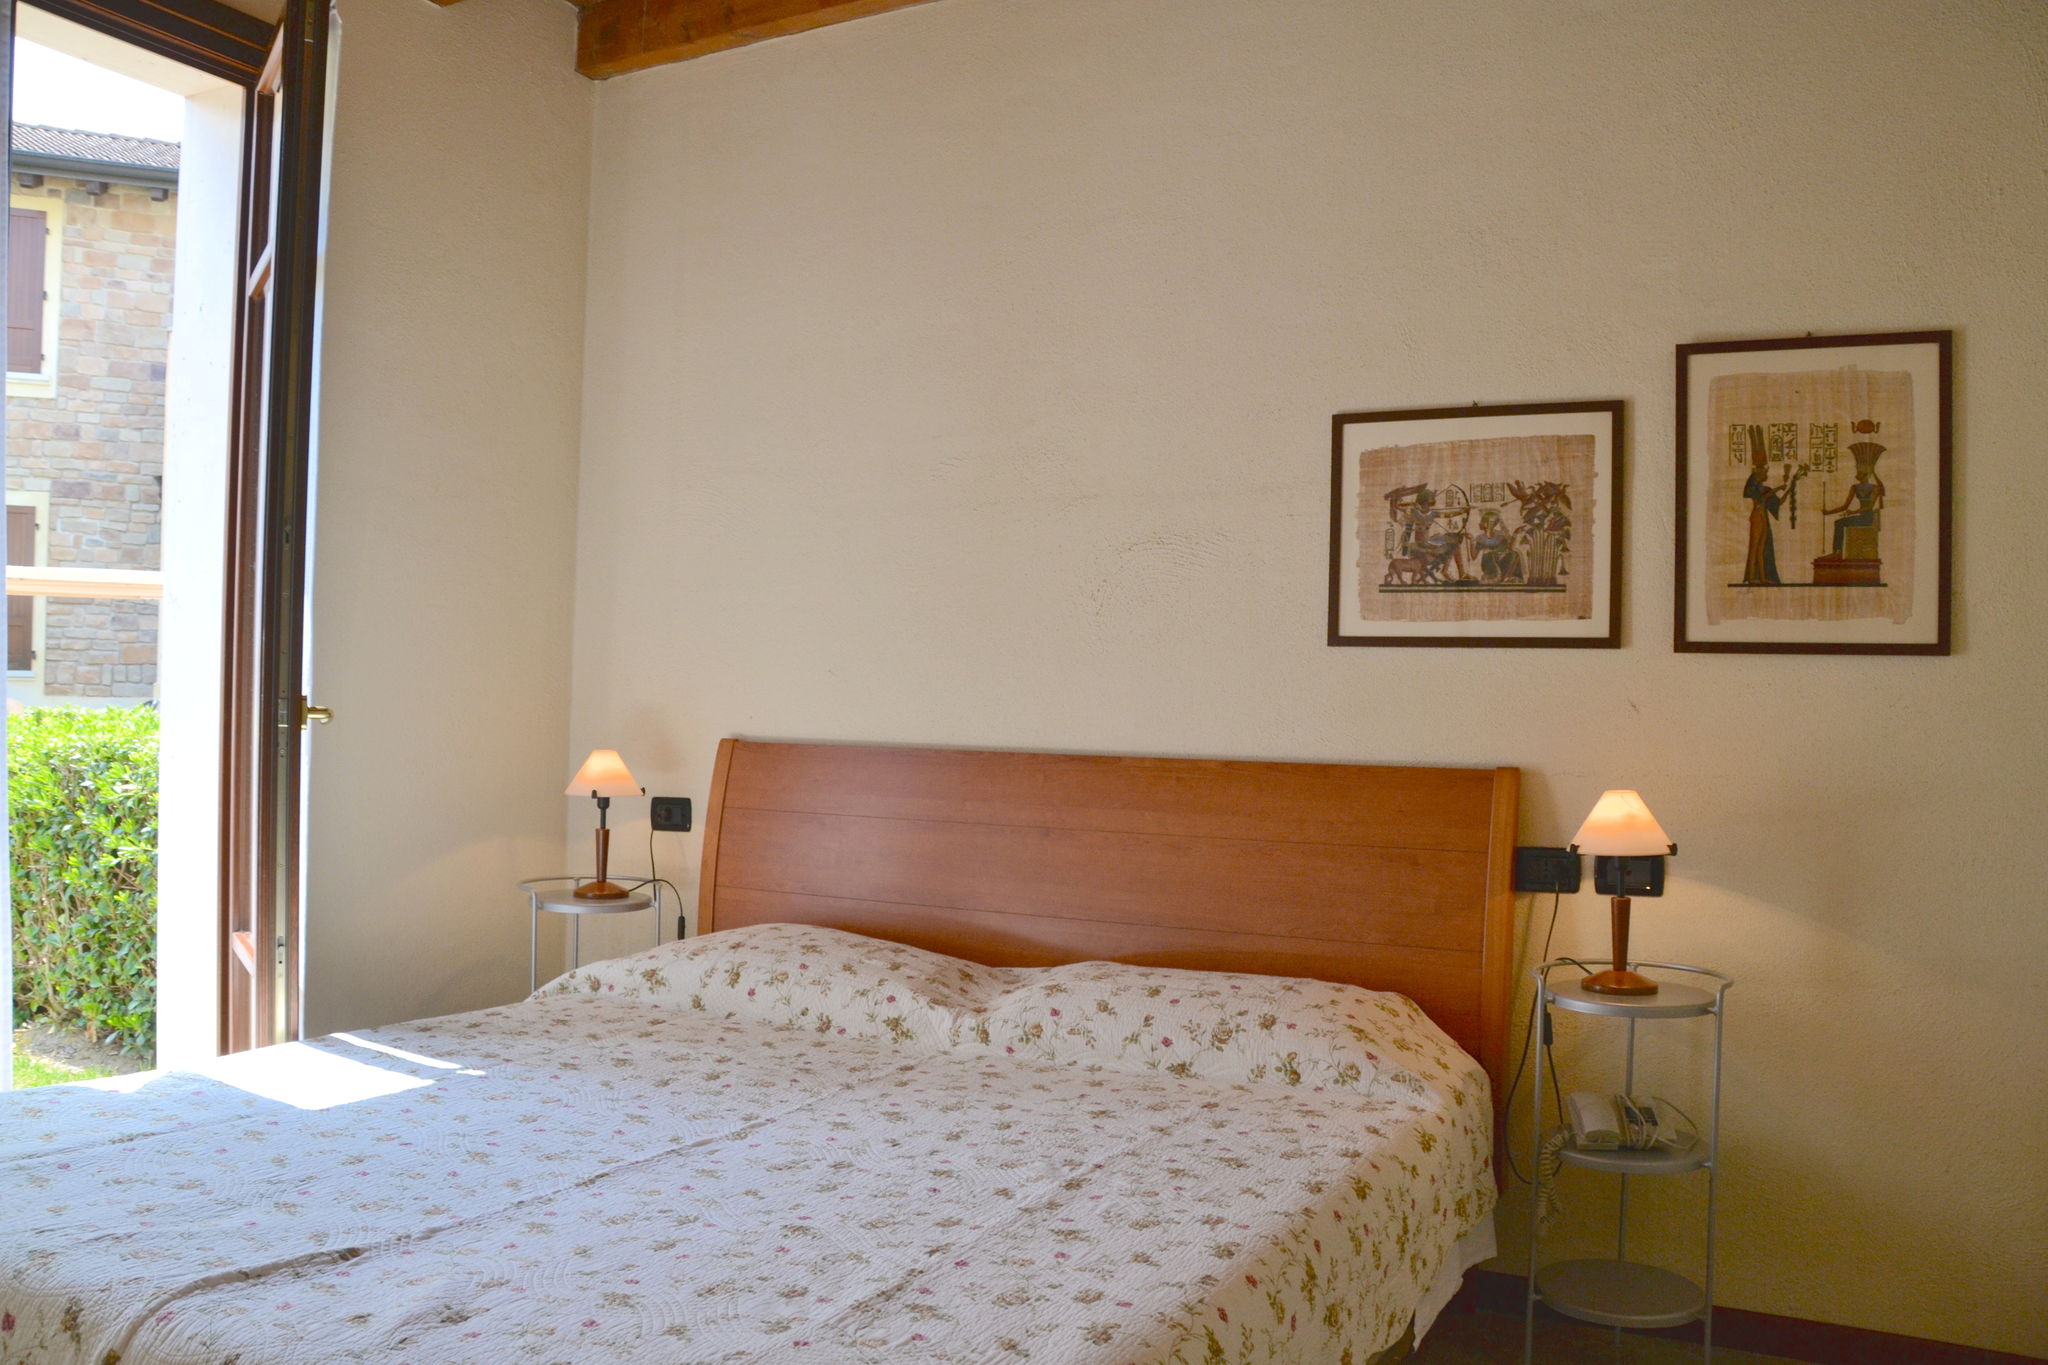 Appartement in ein Residenz 400m vom Gardasee
